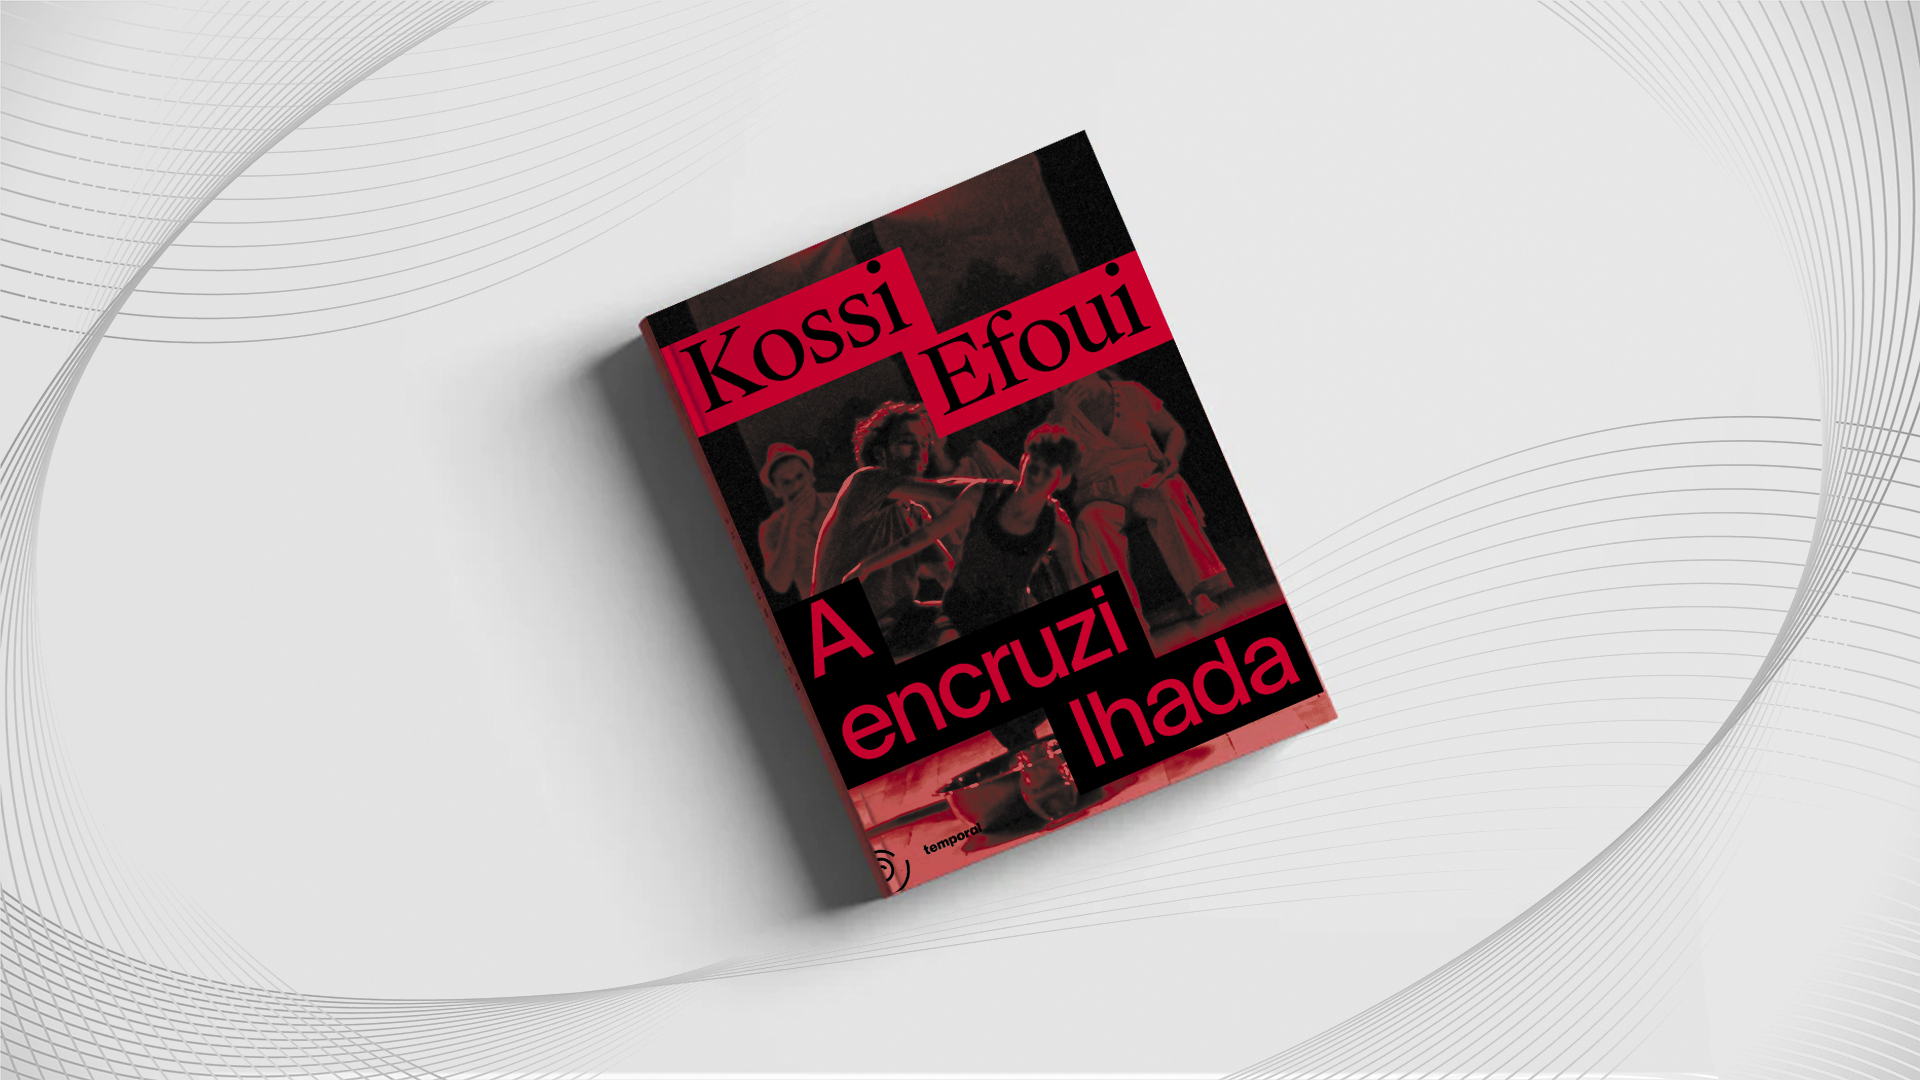 Imagem colorida mostra a capa do livro A Encruzilhada, do escritor Kossi Efoui